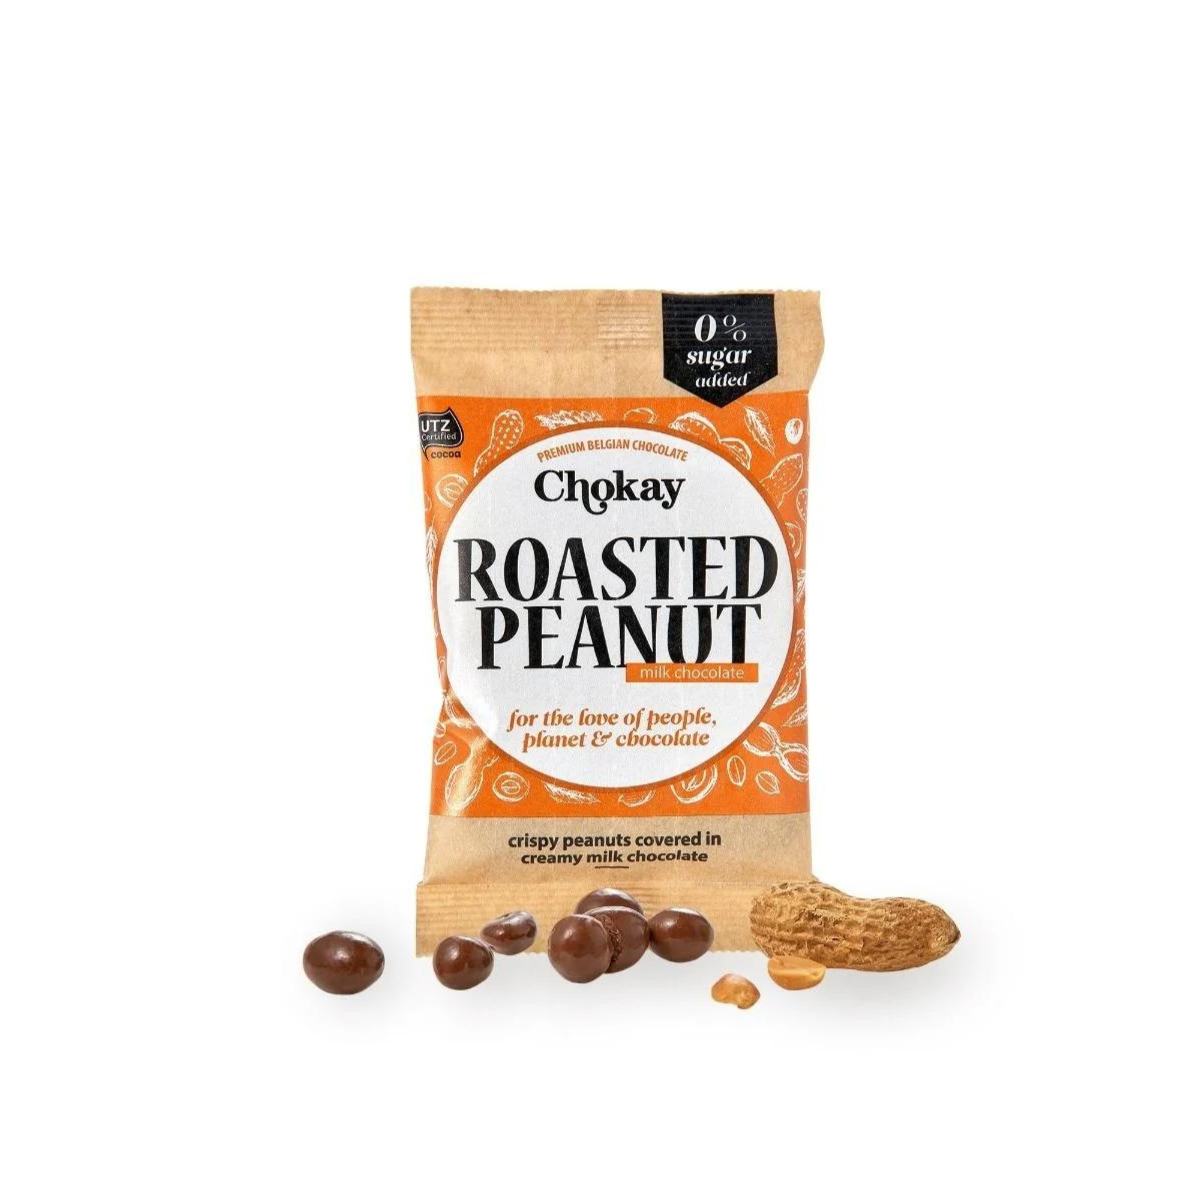 Chokay Roasted Peanut Snack pack 40g